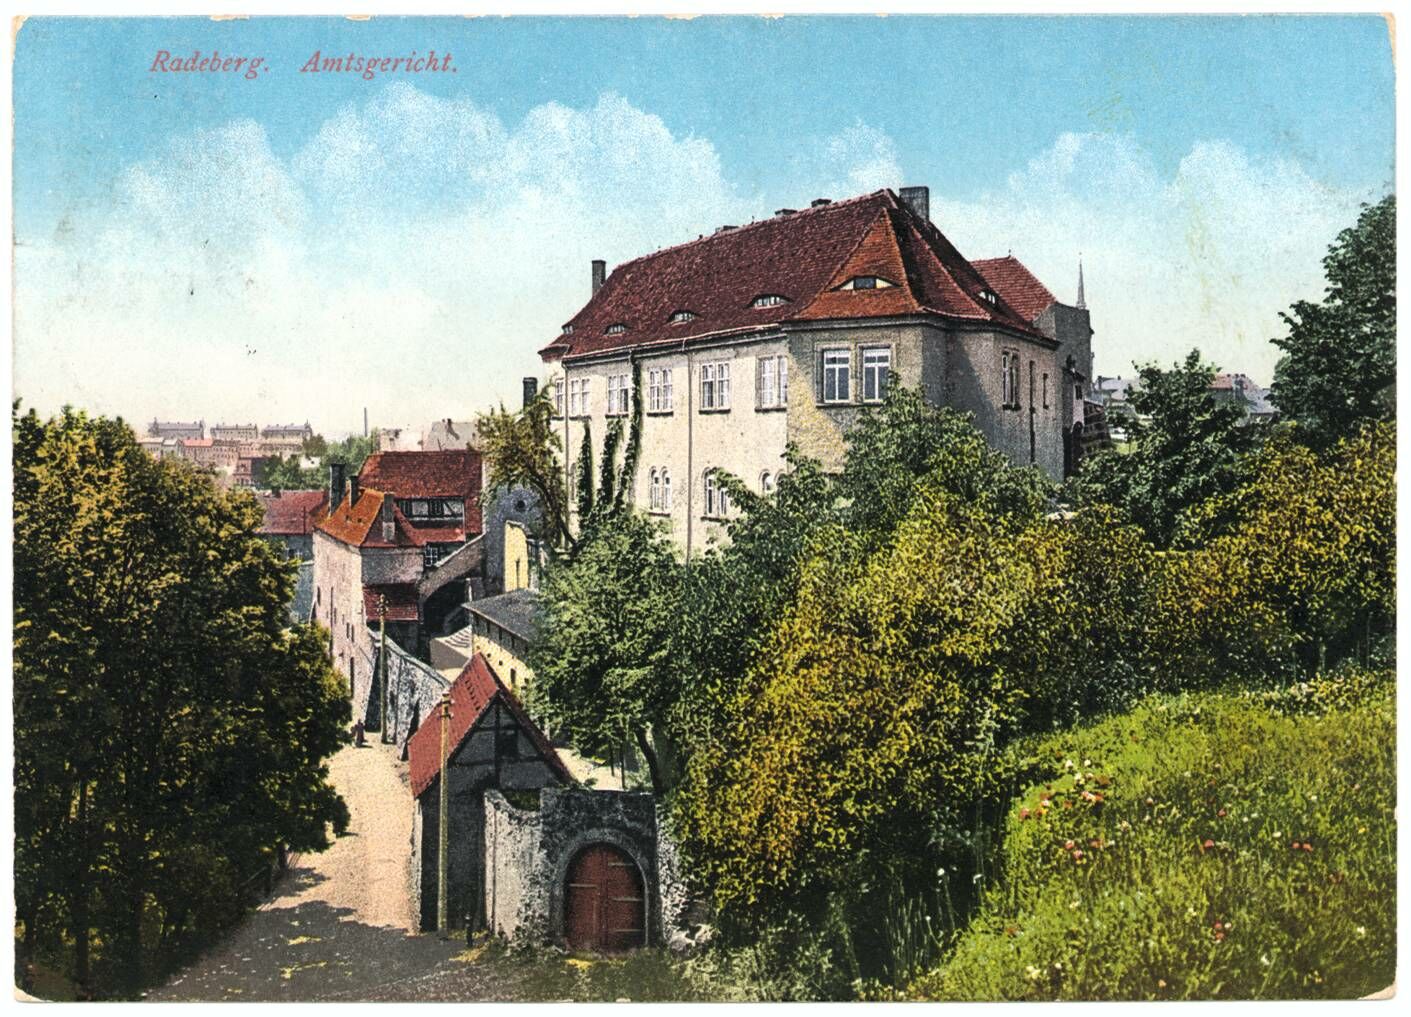 Foto in Vergrößerungsansicht öffnen: Blick auf den hinteren Schlosseingang, die Hauptburg, die Schlossmauer und den Weg, der an der Schlossmauer entlang führt. Es handelt sich um eine kolorierte Postkarte von 1915.